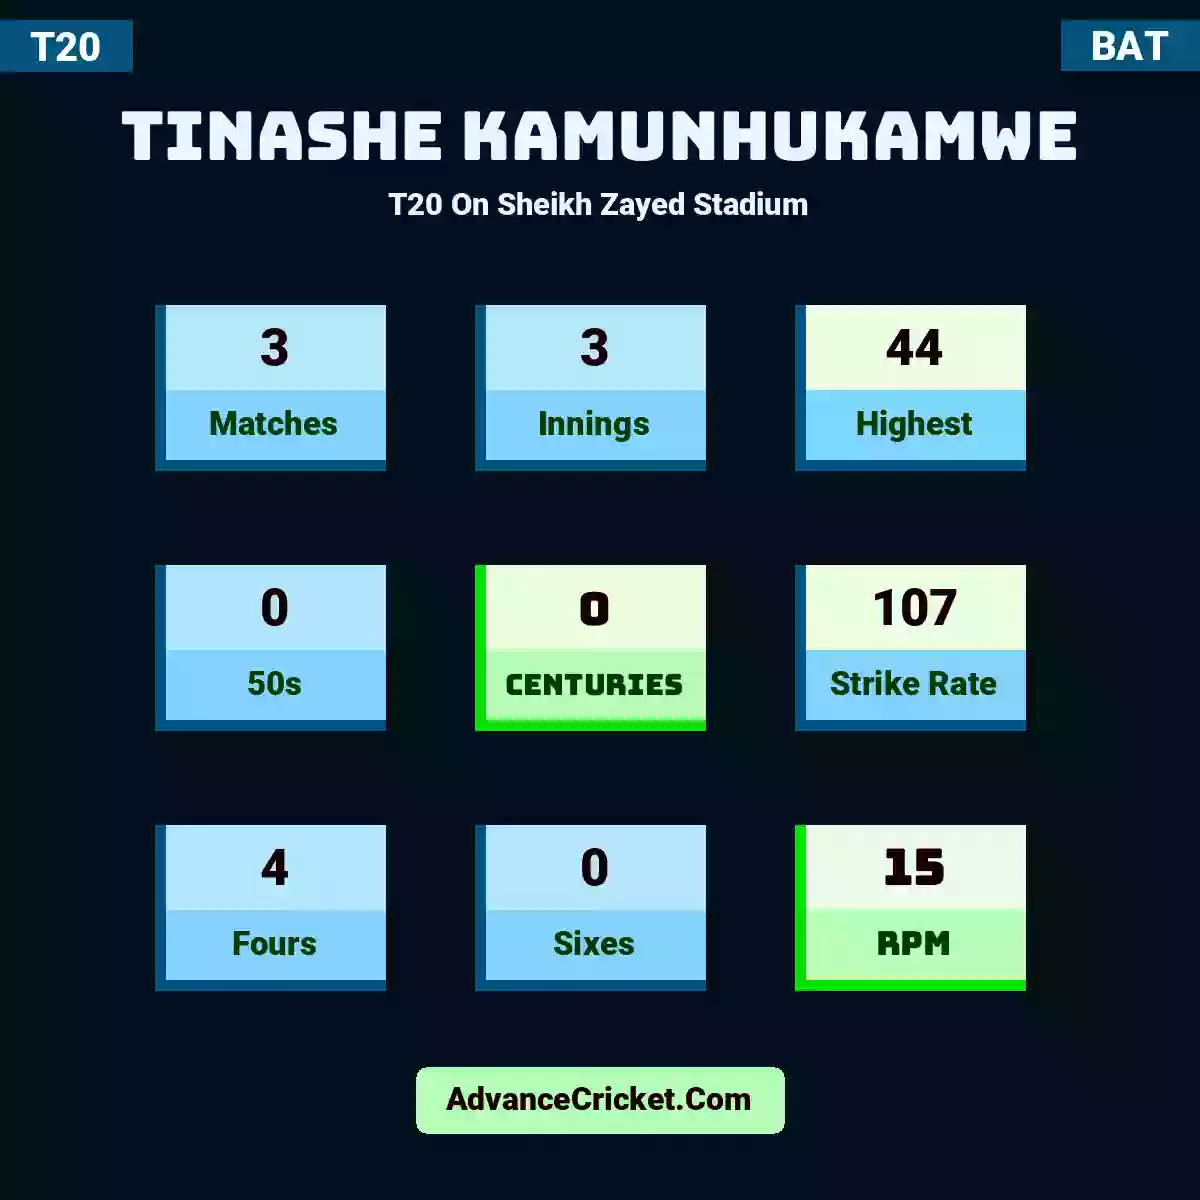 Tinashe Kamunhukamwe T20  On Sheikh Zayed Stadium, Tinashe Kamunhukamwe played 3 matches, scored 44 runs as highest, 0 half-centuries, and 0 centuries, with a strike rate of 107. T.Kamunhukamwe hit 4 fours and 0 sixes, with an RPM of 15.